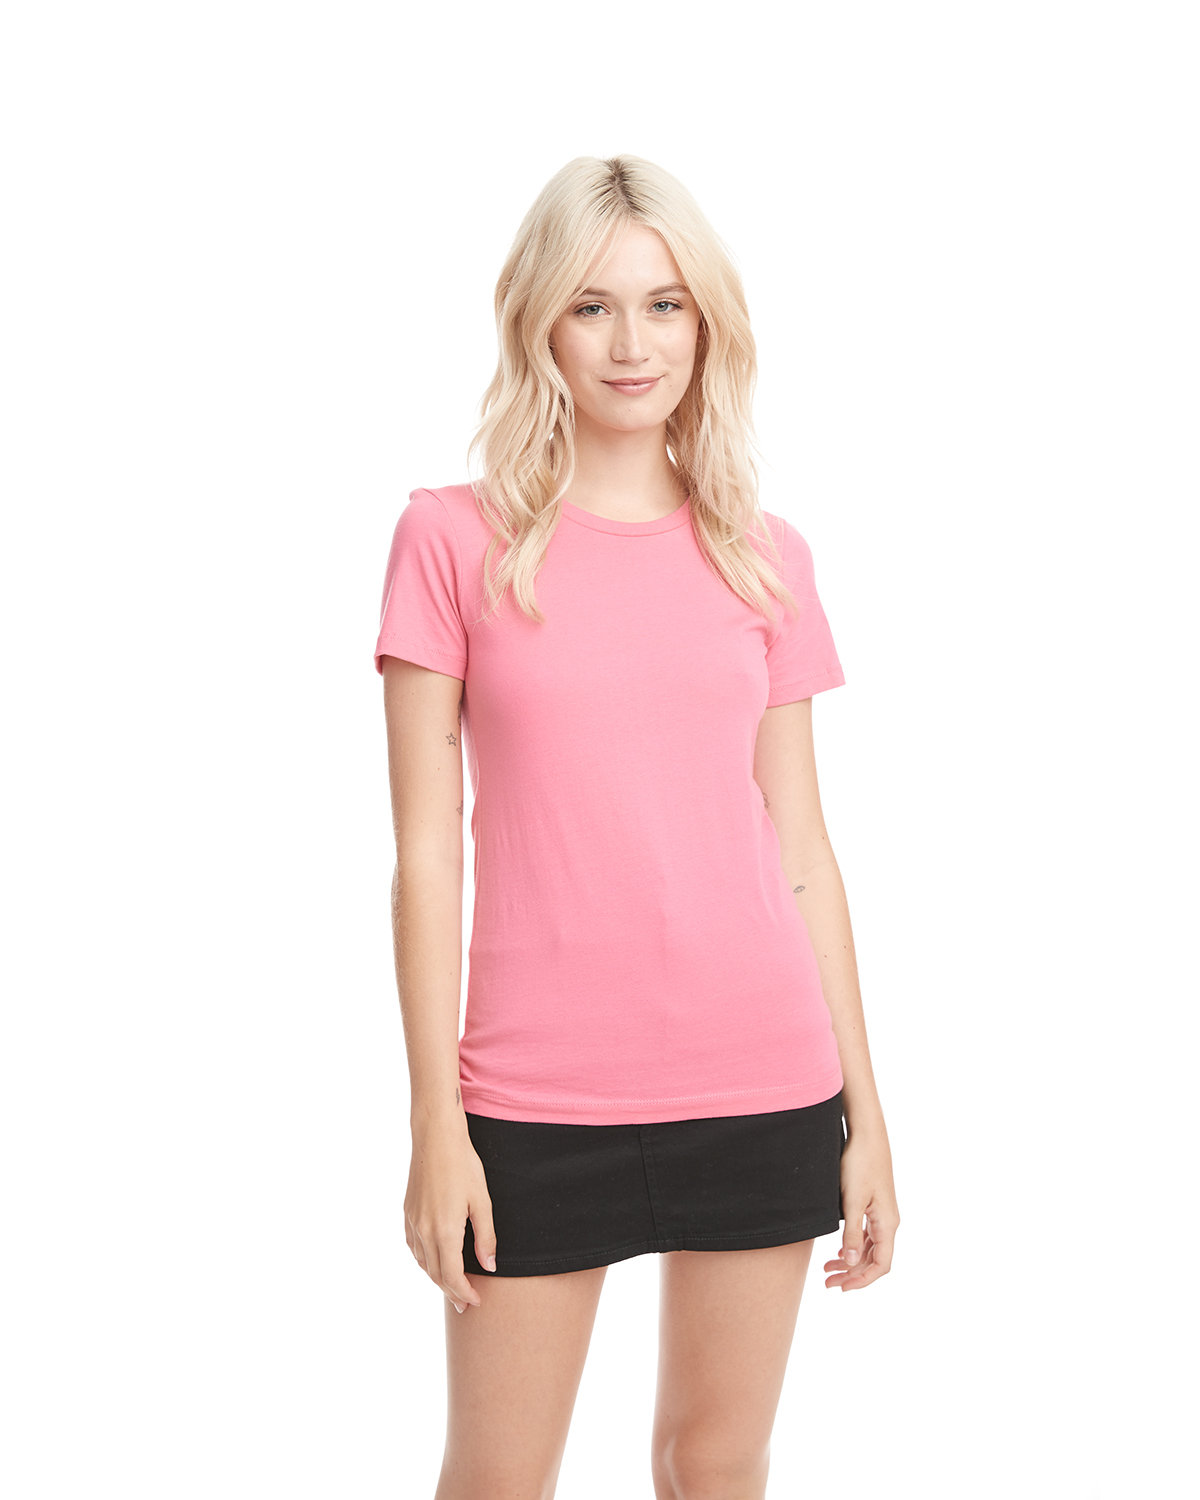 Next Level 3600 Unisex Cotton T Shirt - Light Pink - L